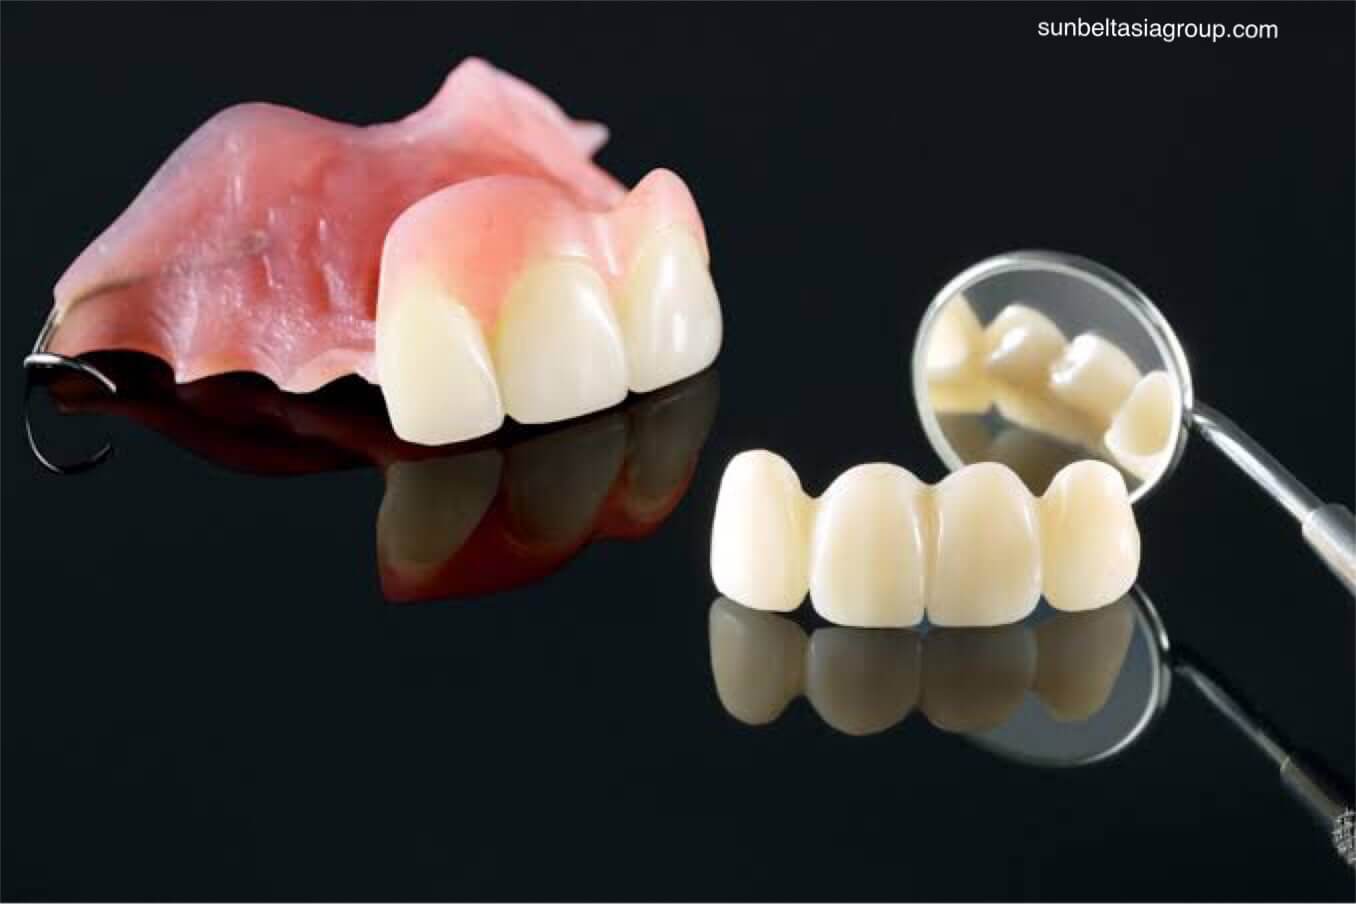 ฟันปลอม เป็นอุปกรณ์ในช่องปาก